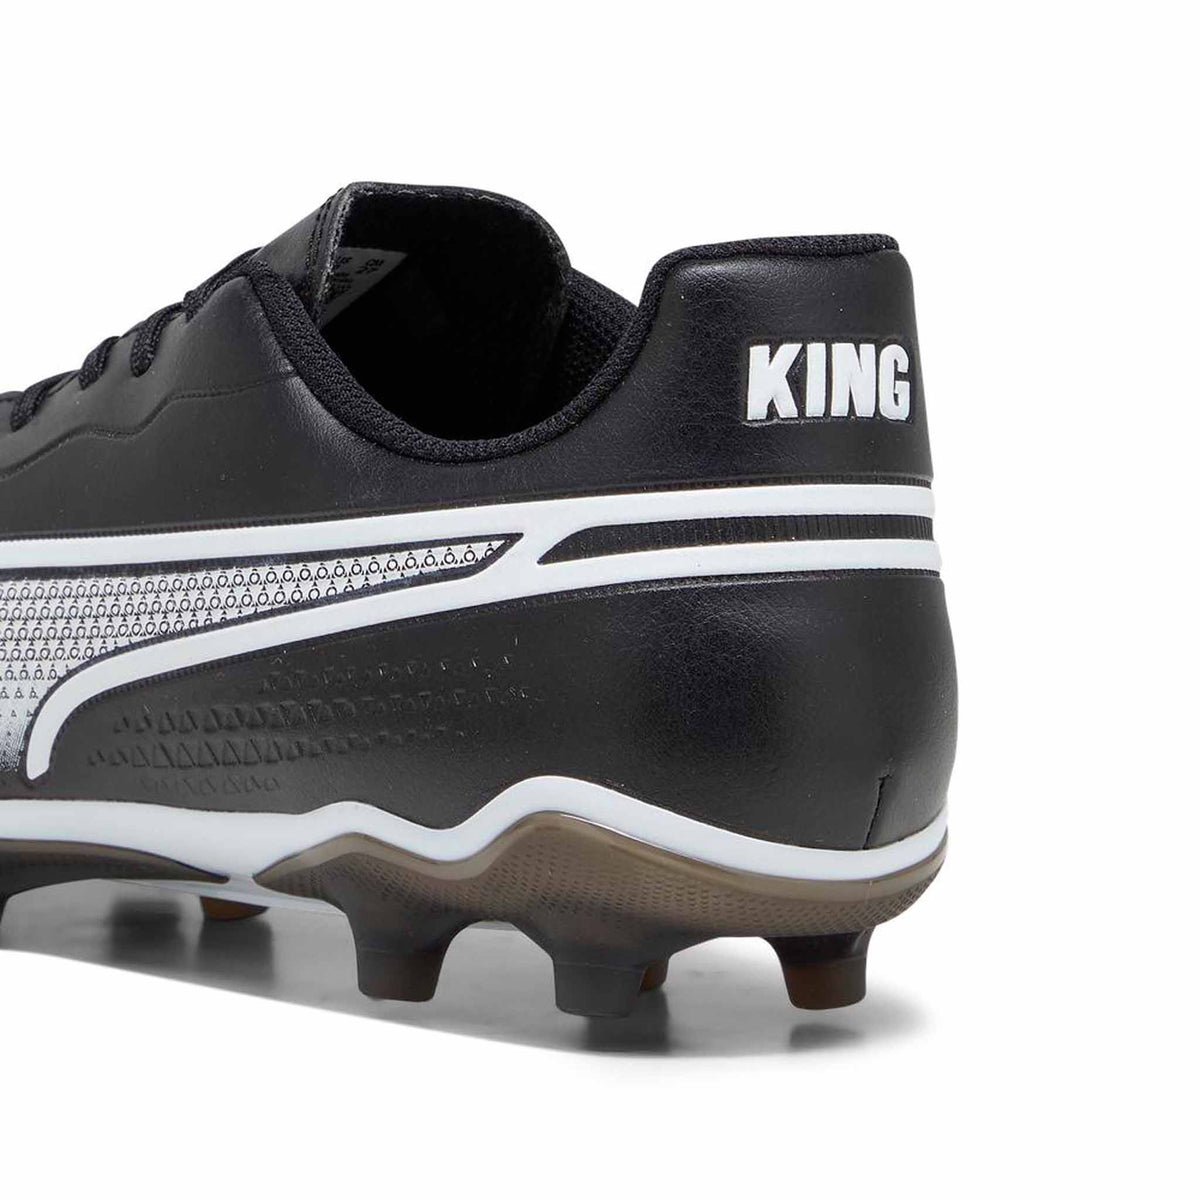 Puma King Match FG chaussures de soccer - Puma Black / Puma White